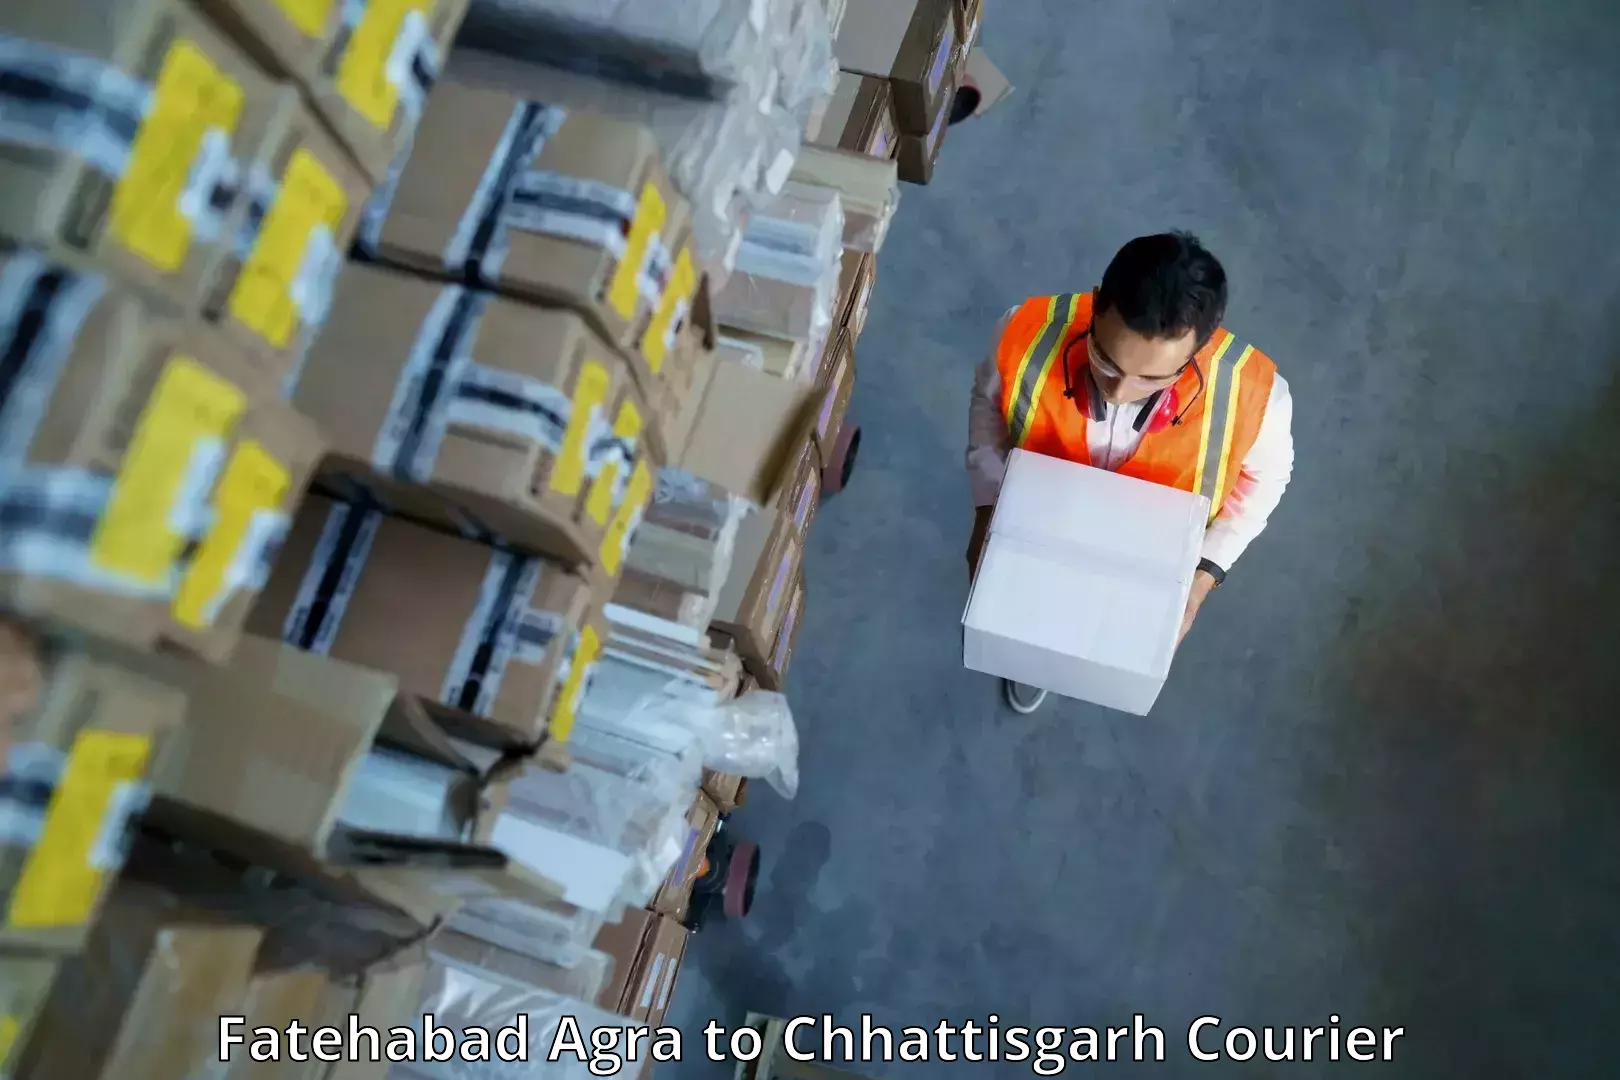 Reliable courier service Fatehabad Agra to Korea Chhattisgarh